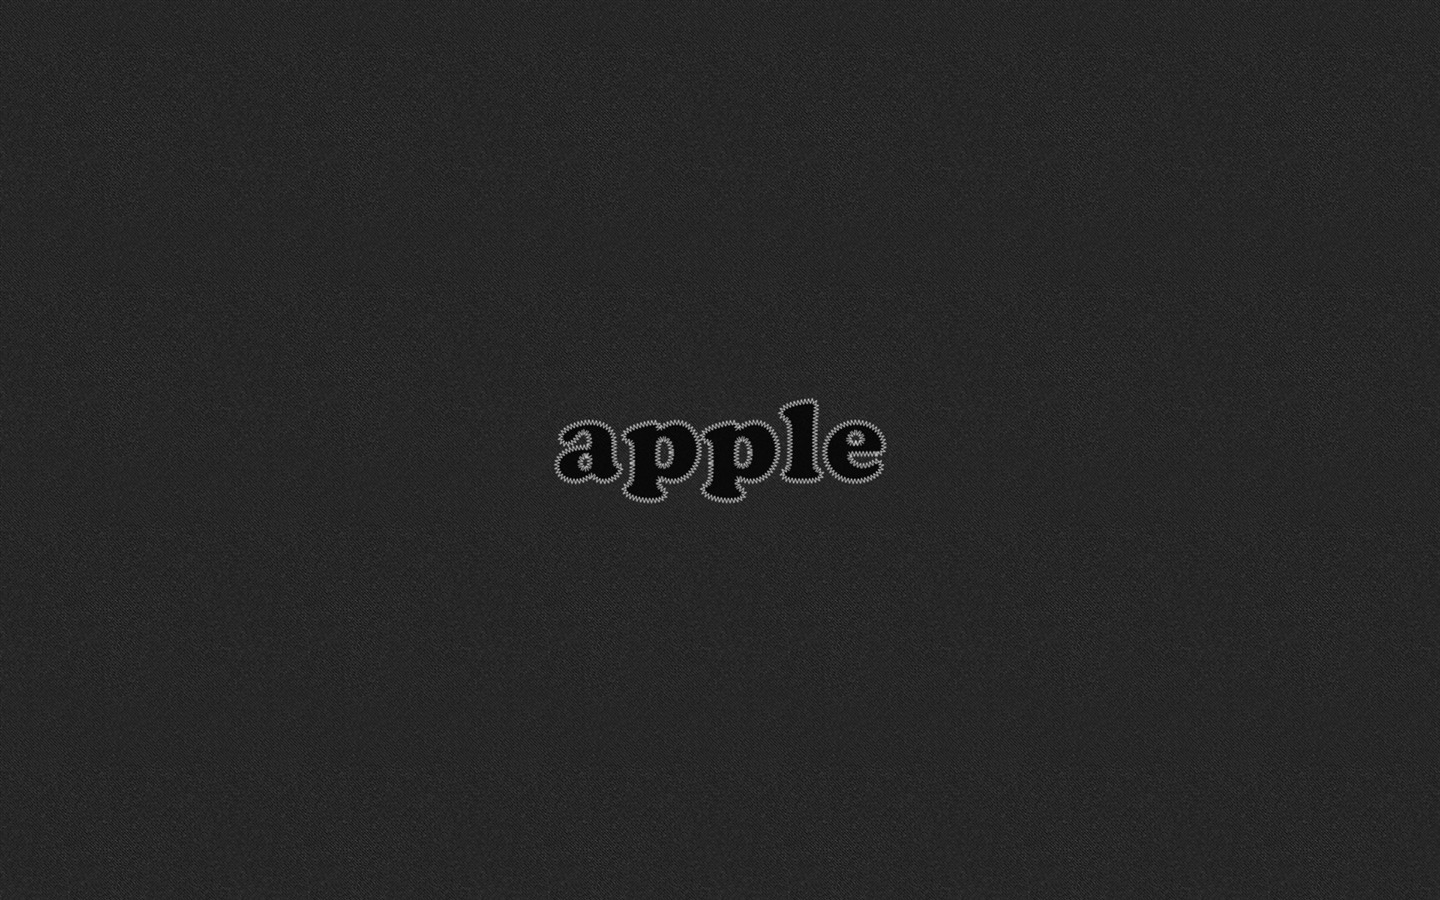 Apple Nuevo Tema Fondos de Escritorio #36 - 1440x900